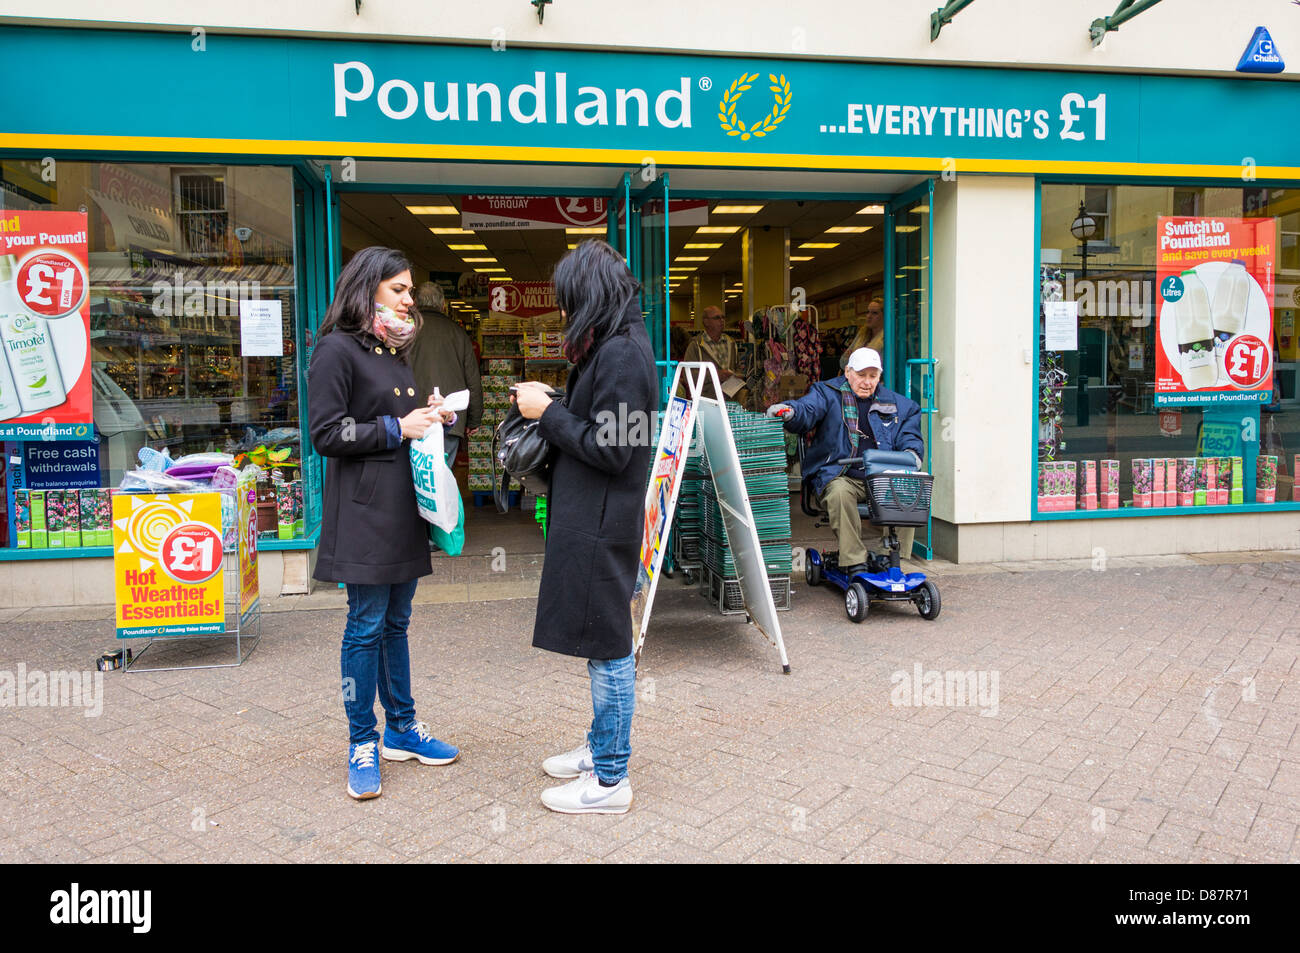 Poundland store, England, UK Stock Photo